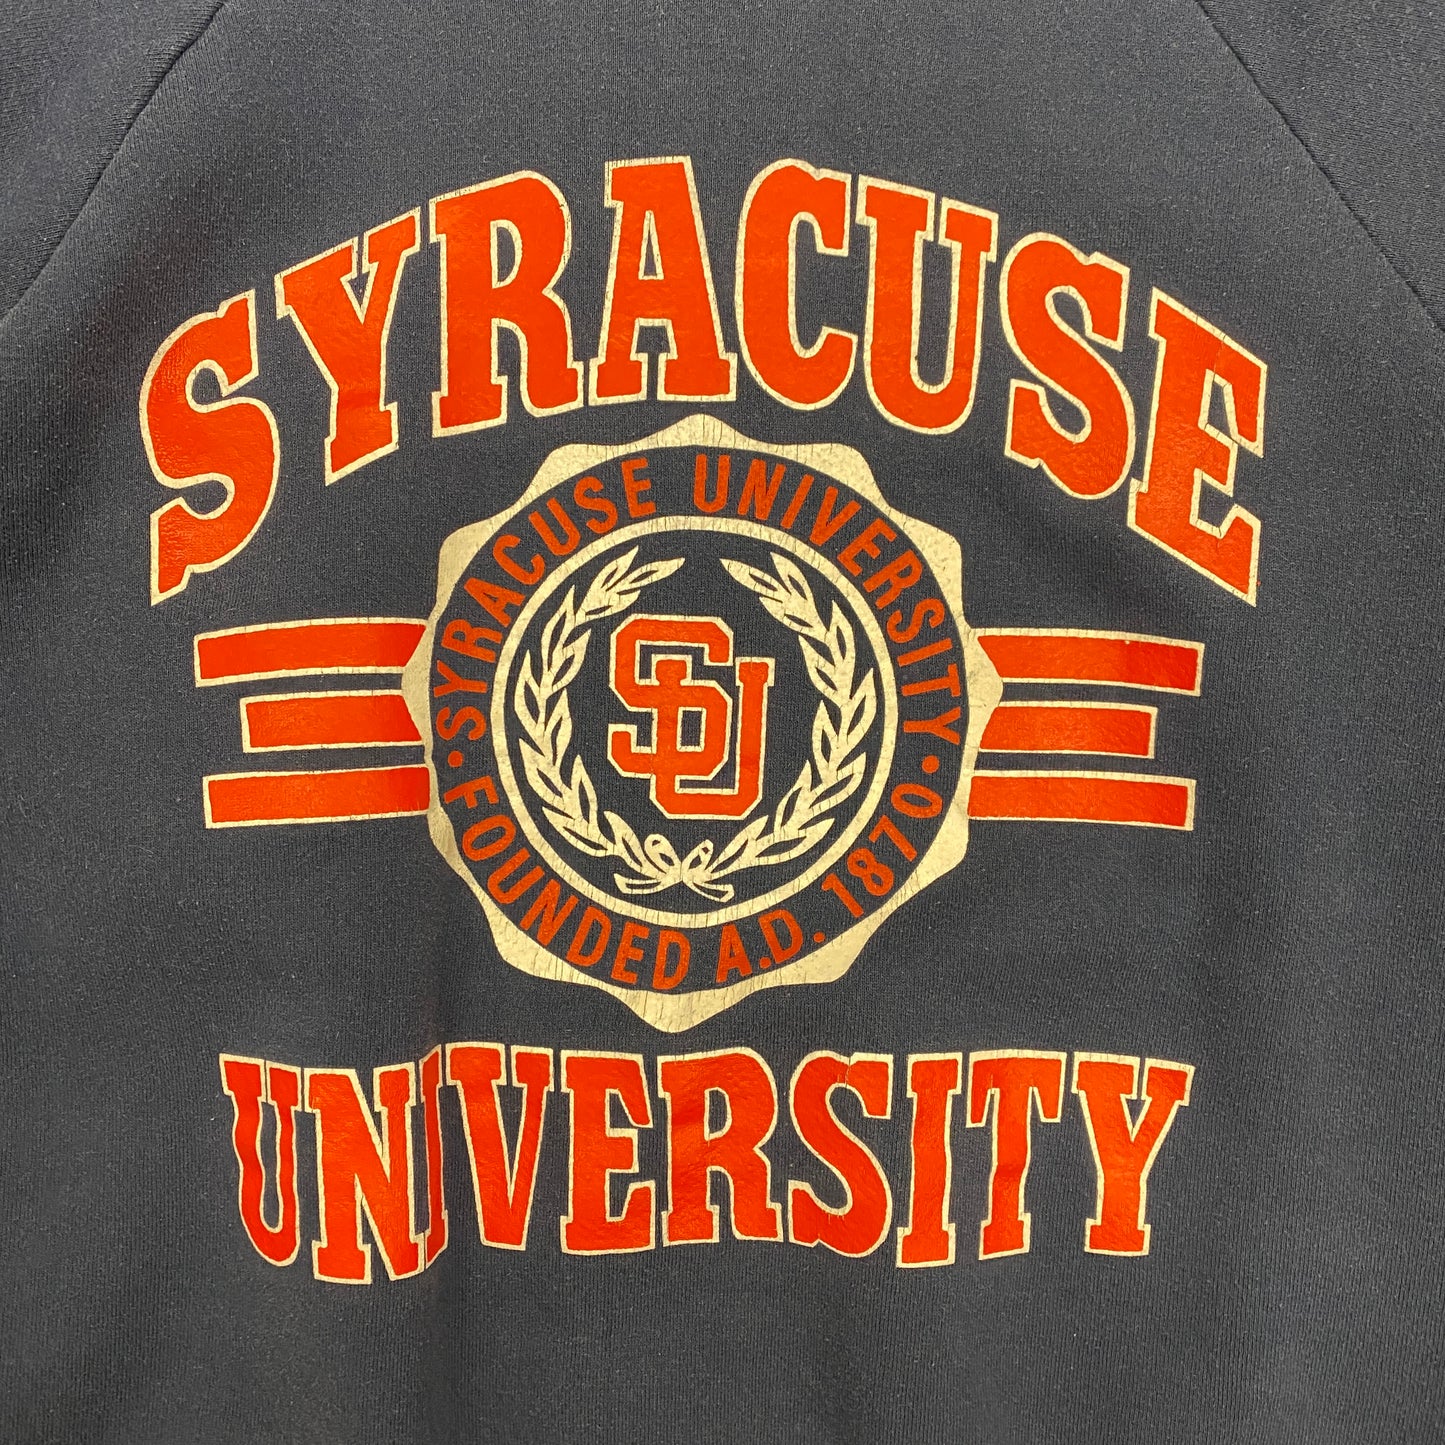 Vintage 1990s Syracuse University Raglan Sweatshirt - Size Large